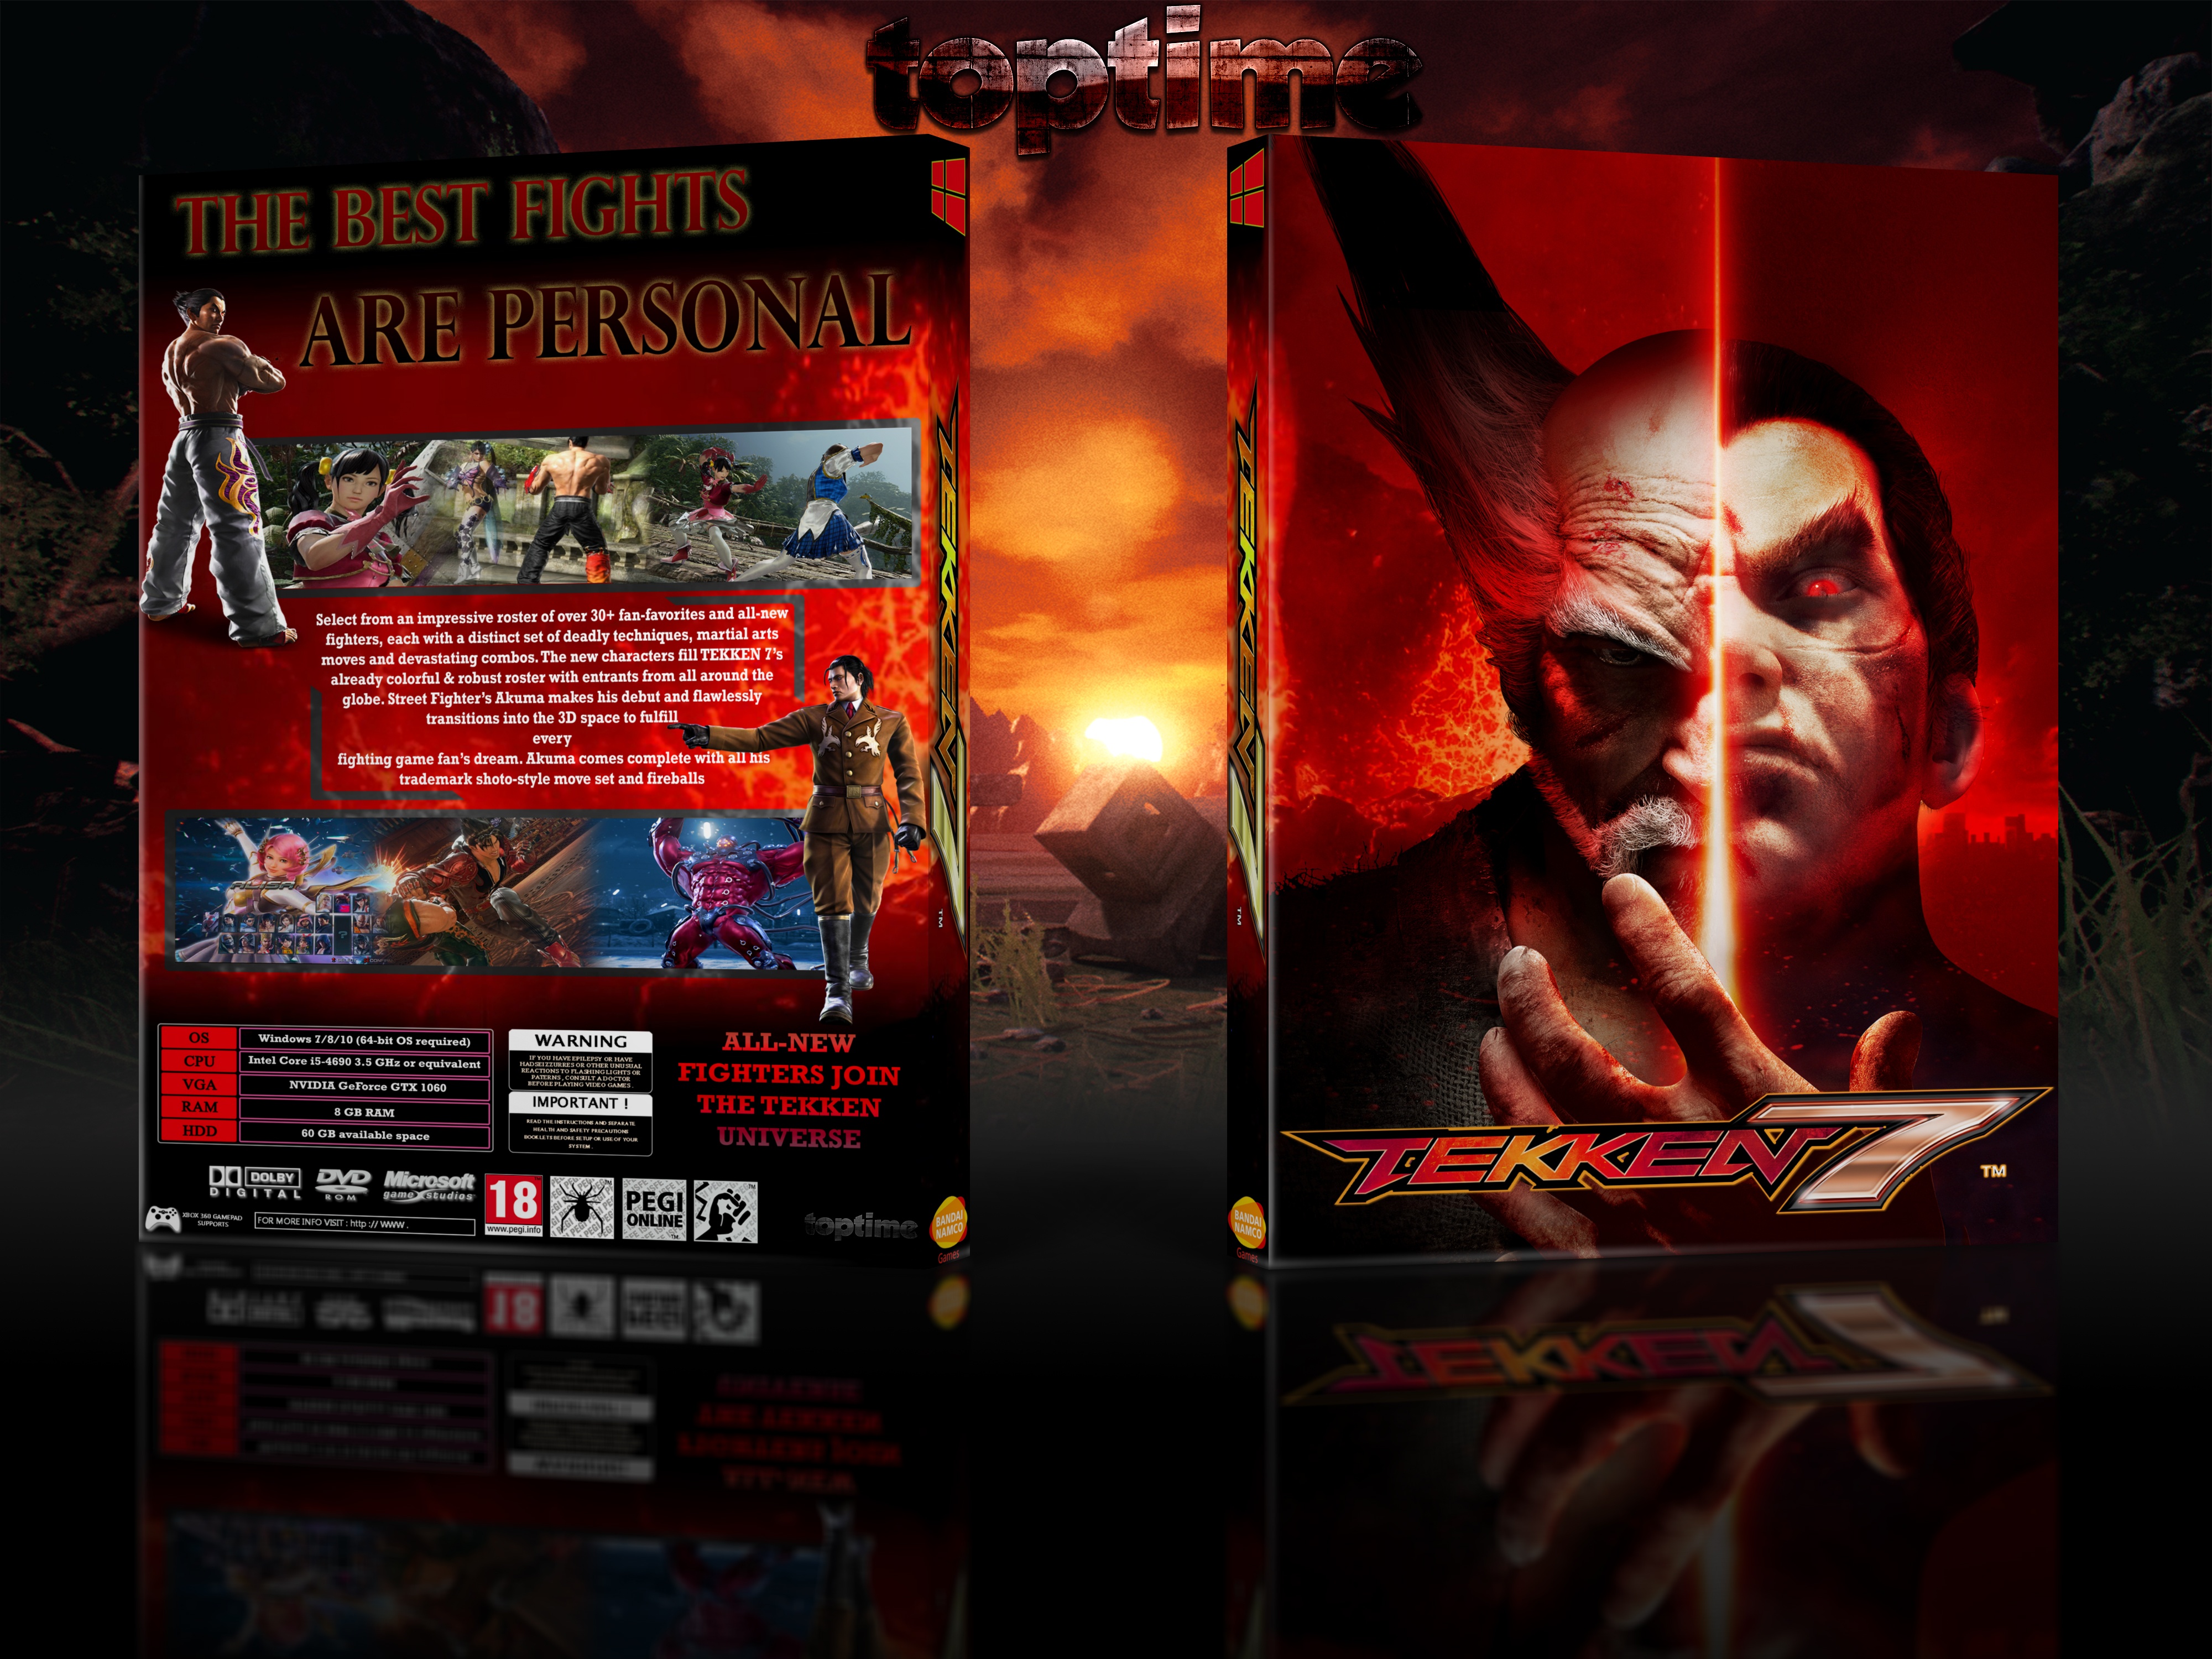 Tekken 7 box cover